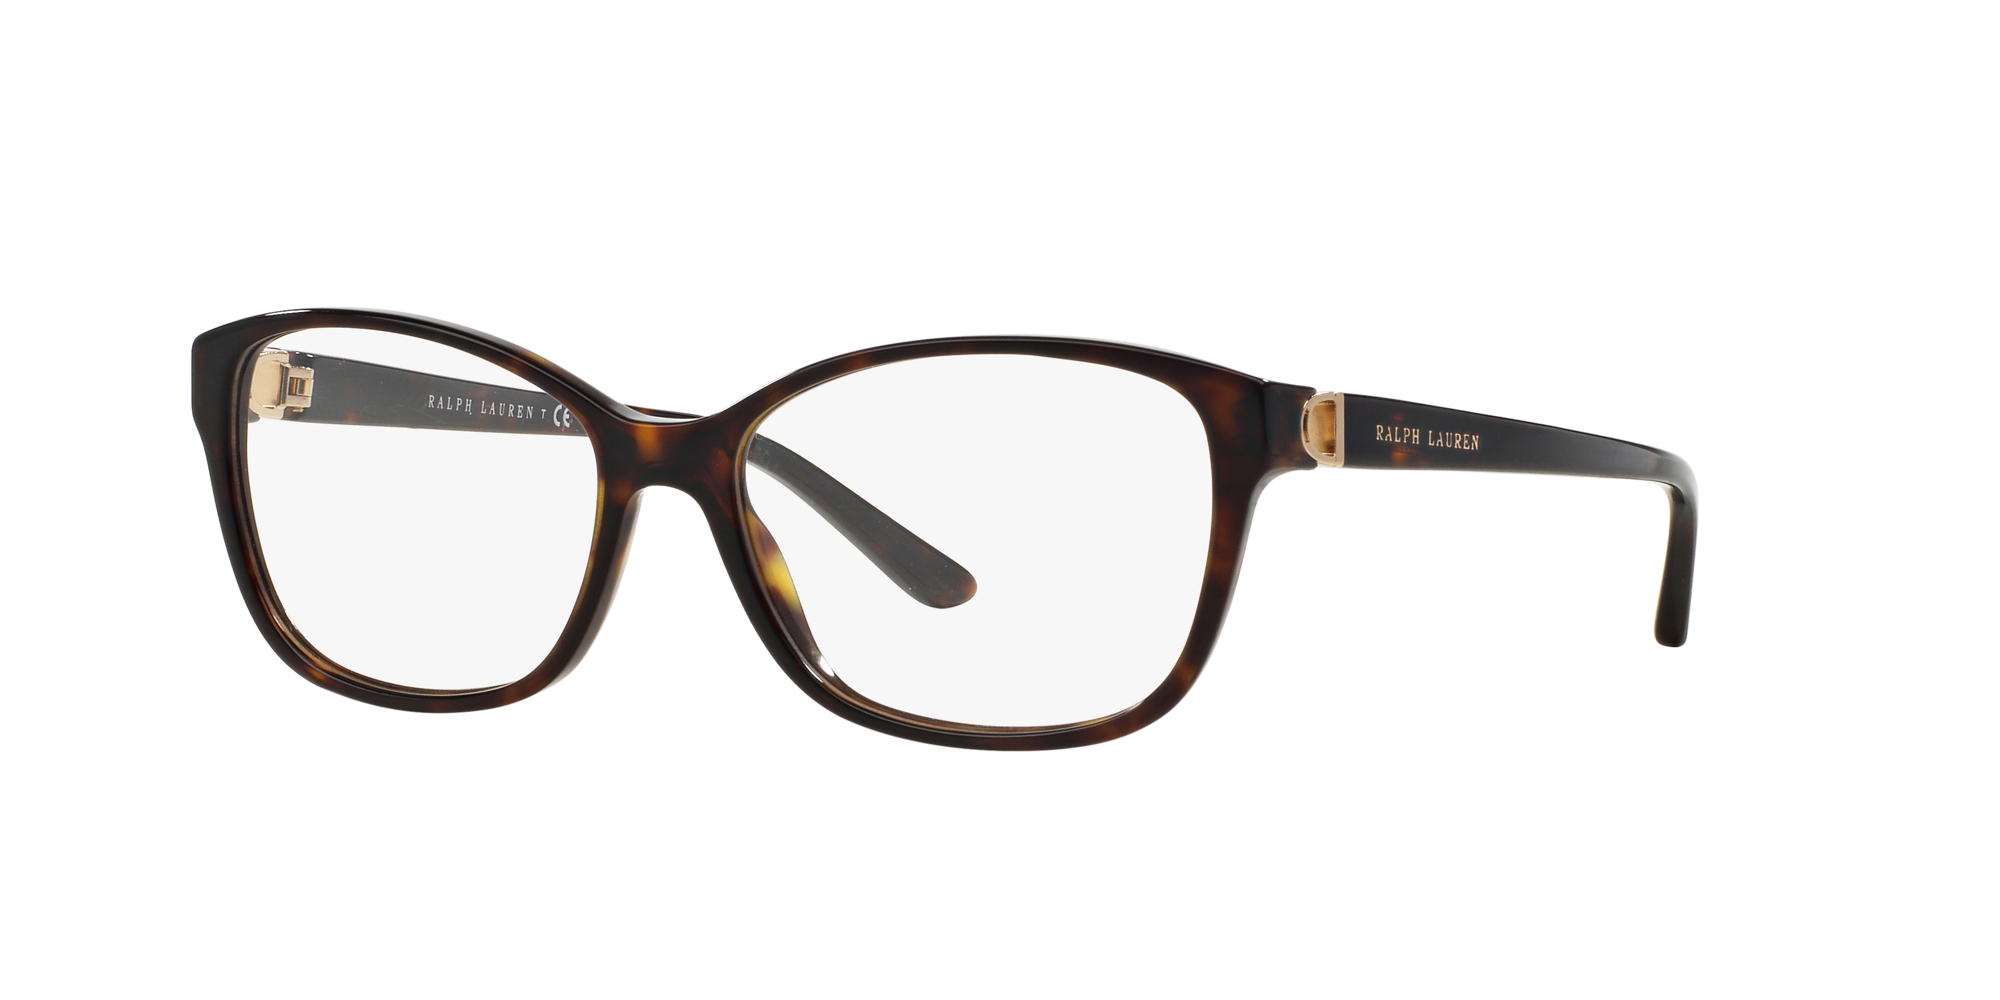 Angle_Left01 Ralph Lauren RL 6136 (5003) Glasses Transparent / Tortoise Shell